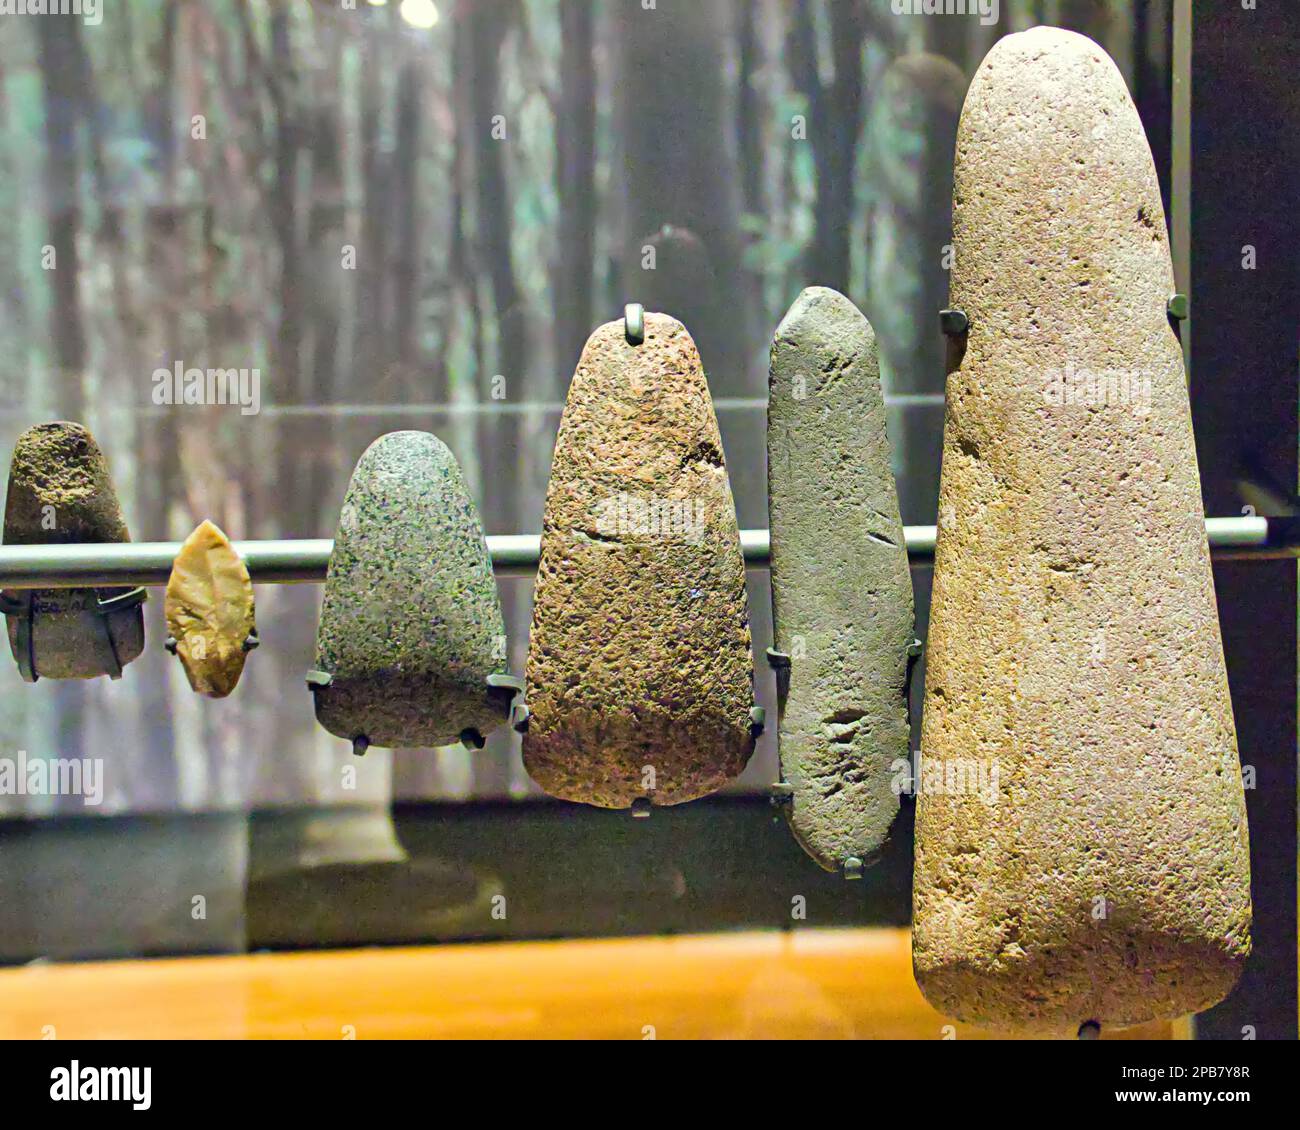 el museo y las galerías de arte de glasgow exhiben cabezas de hacha neolíticas Foto de stock